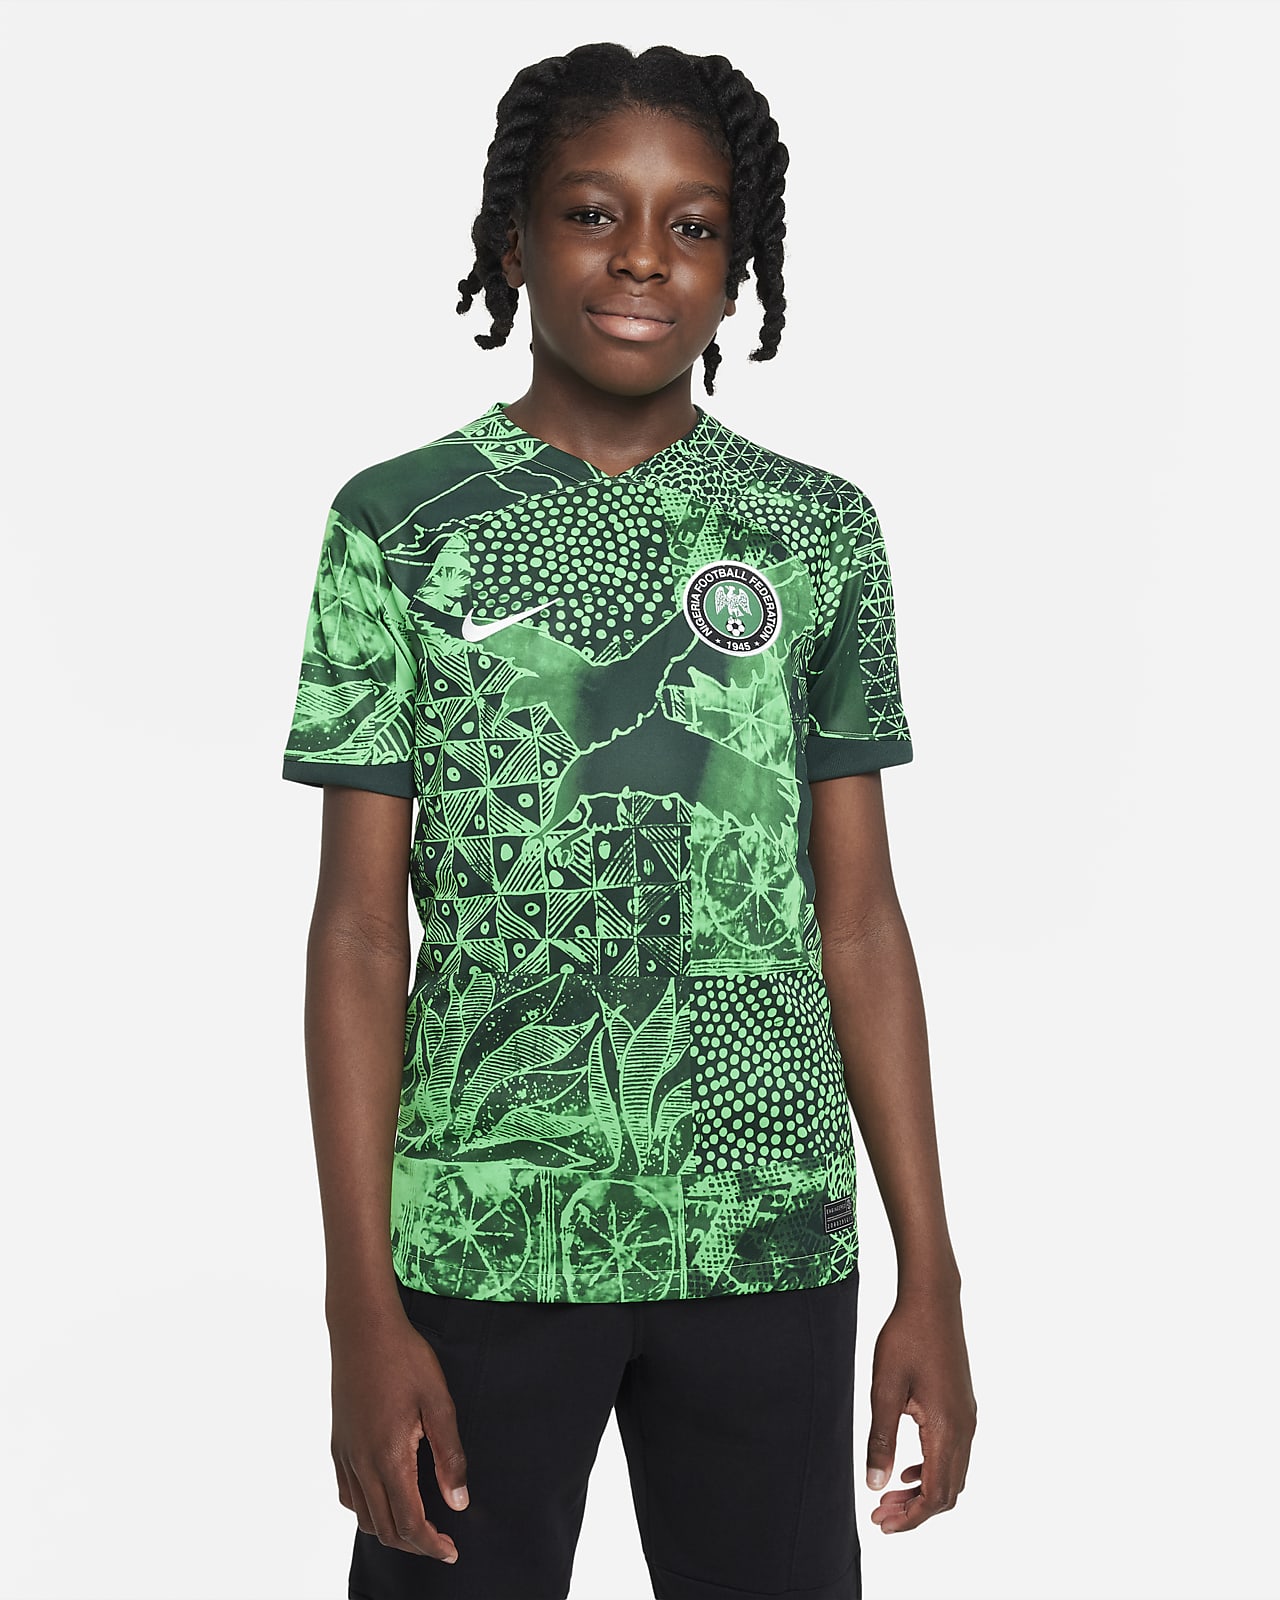 Keer terug Heerlijk Renderen Nigeria 2022/23 Stadium Thuis Nike Dri-FIT voetbalshirt voor kids. Nike BE